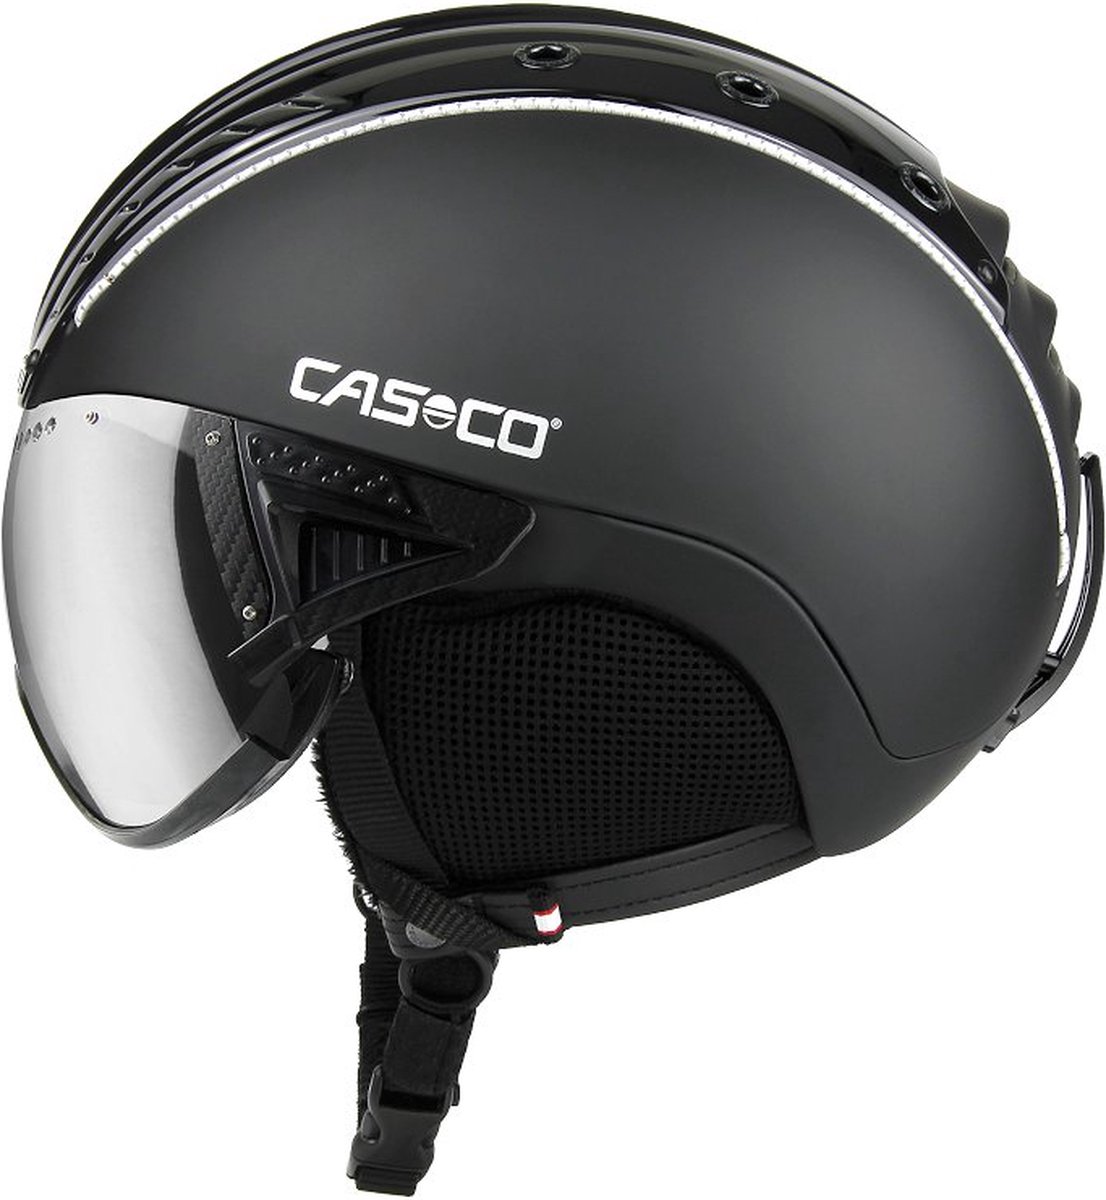 Casco SP-2 Visor skihelm - Black - Wintersport - Wintersport accessoires - Skihelmen